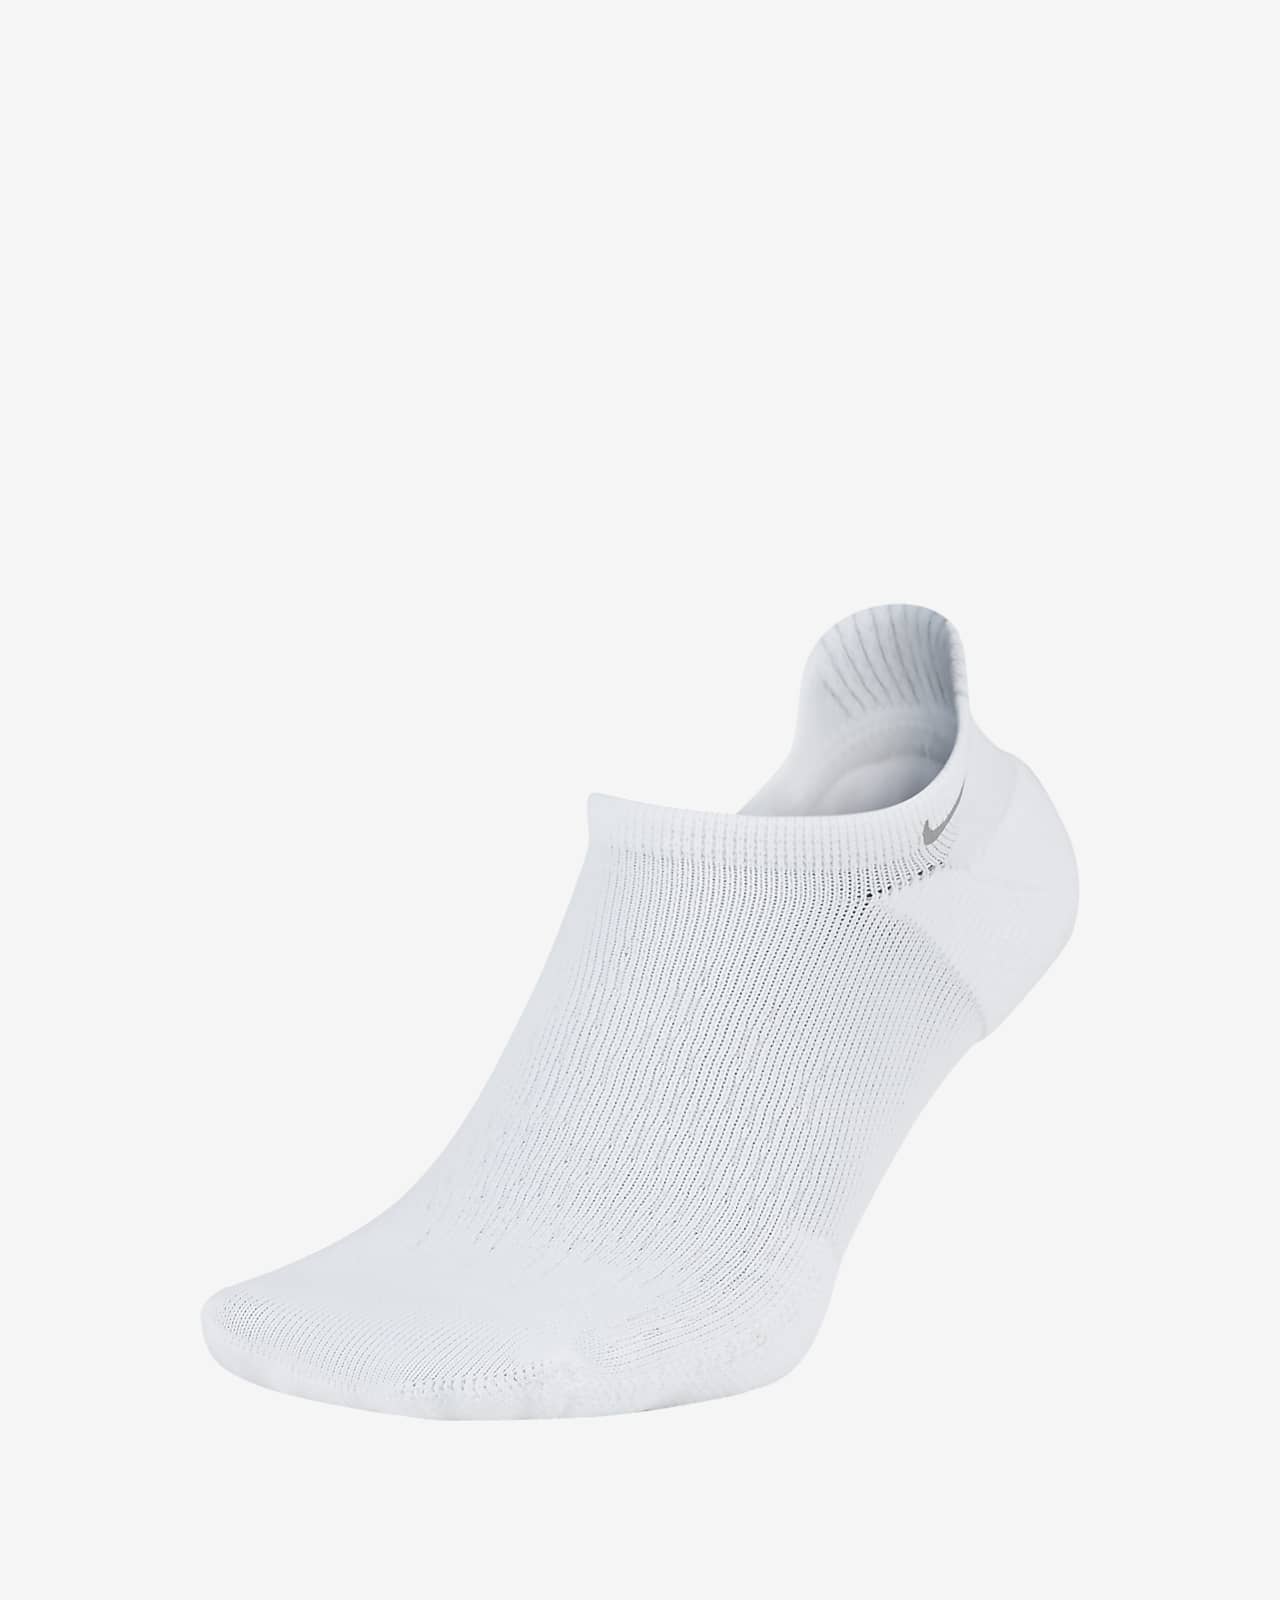 white nike running socks